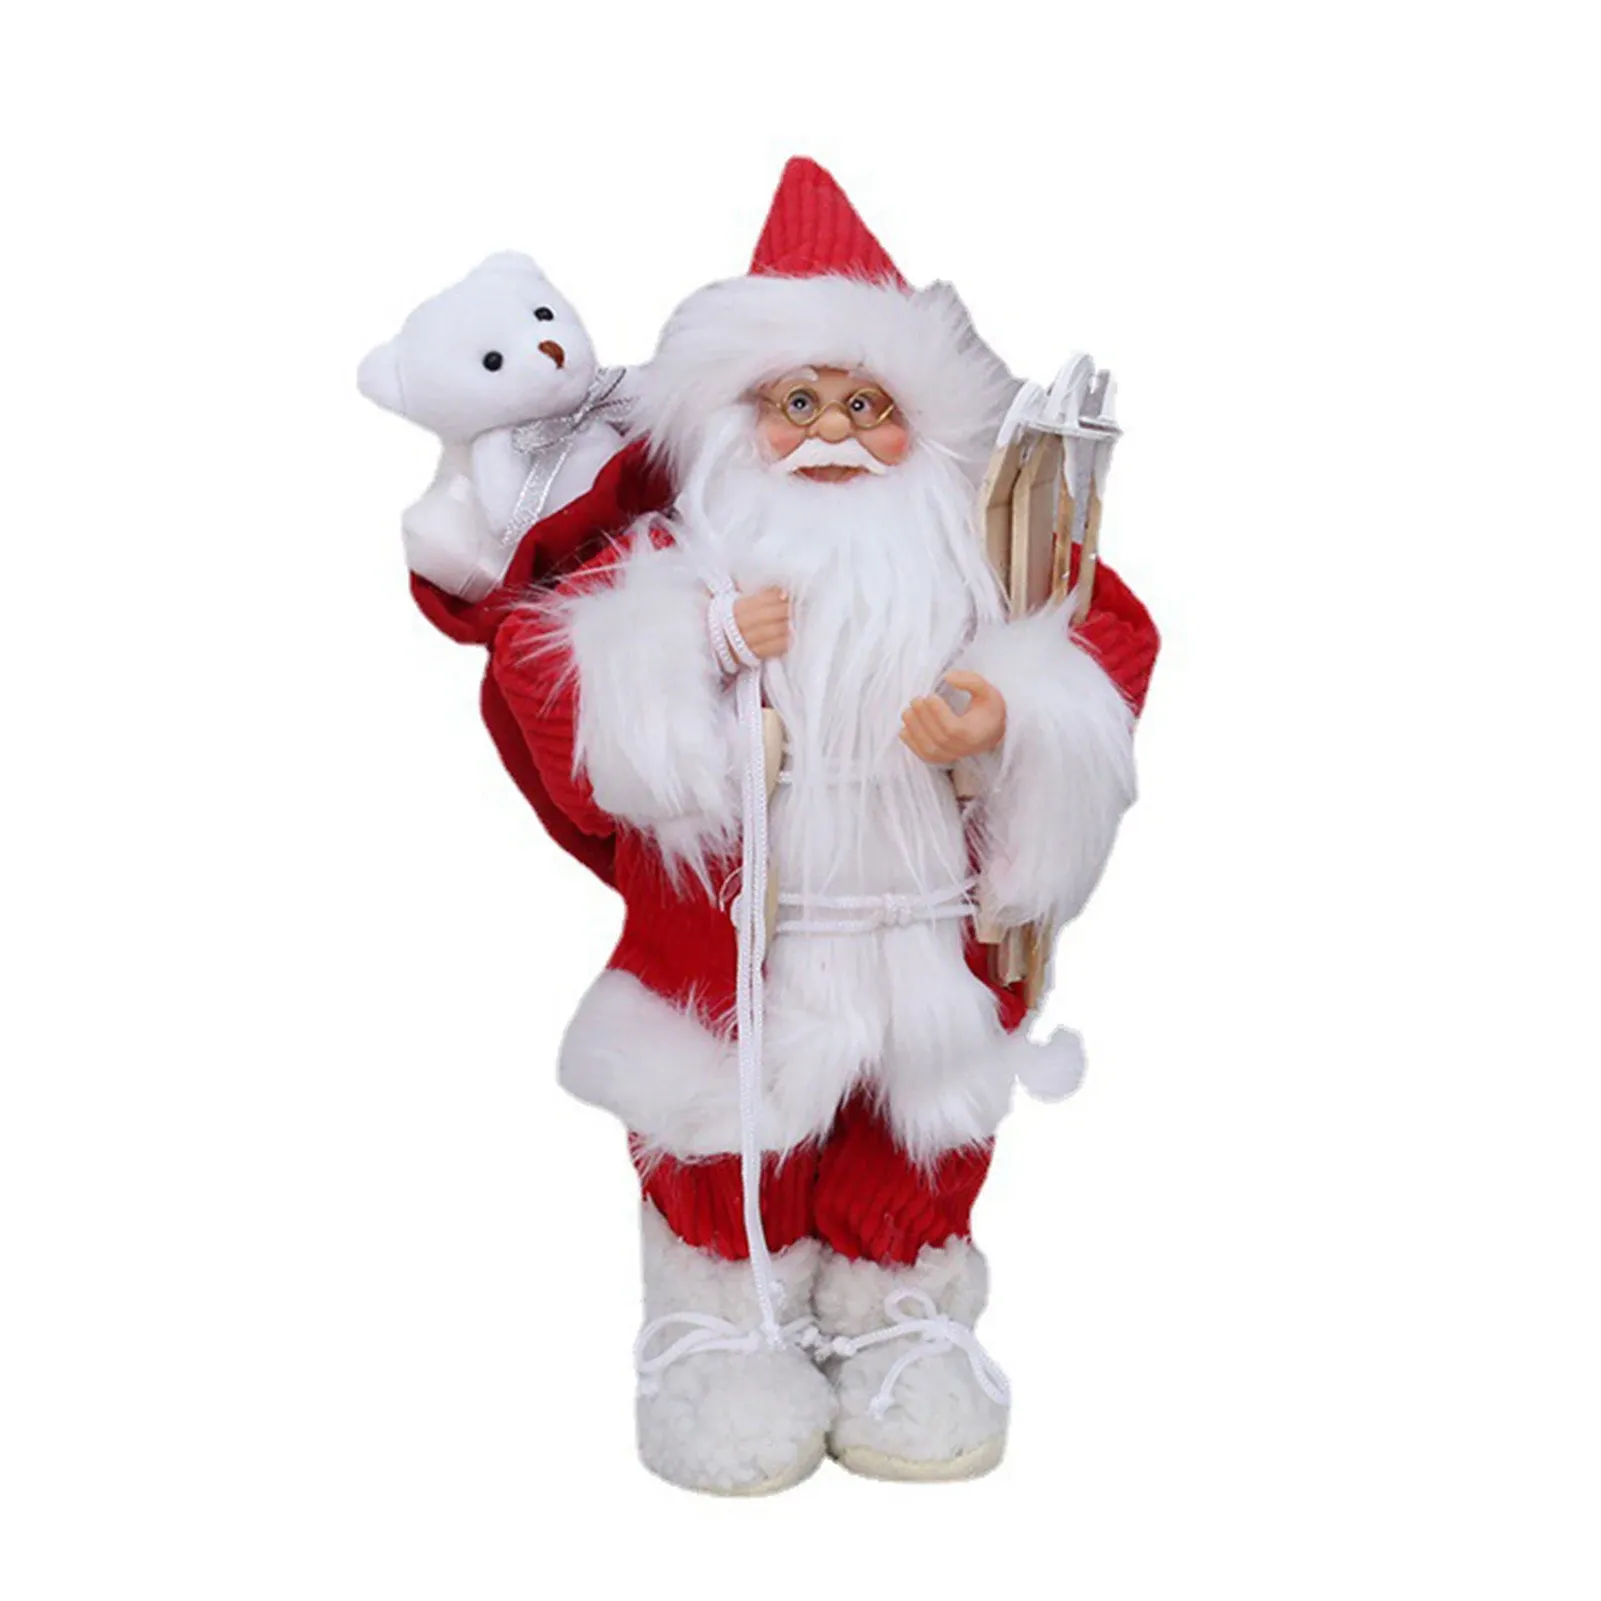 Миниатюры, рождественские плюшевые игрушки, 12 дюймов, имитация фигурки Санта-Клауса, стоящая кукла, украшения для праздничной вечеринки